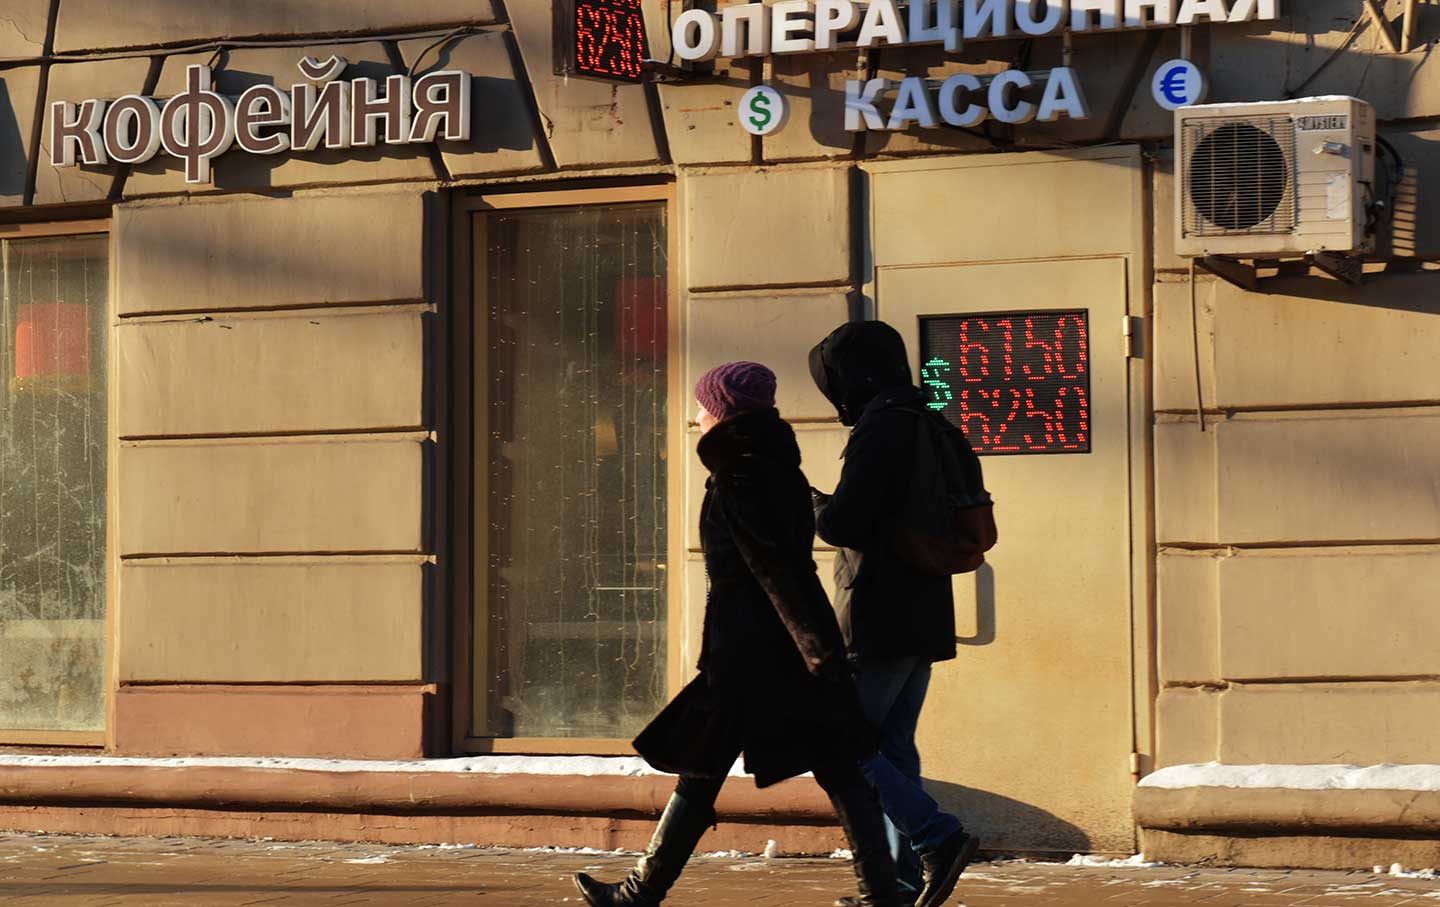 Russian pedestrians